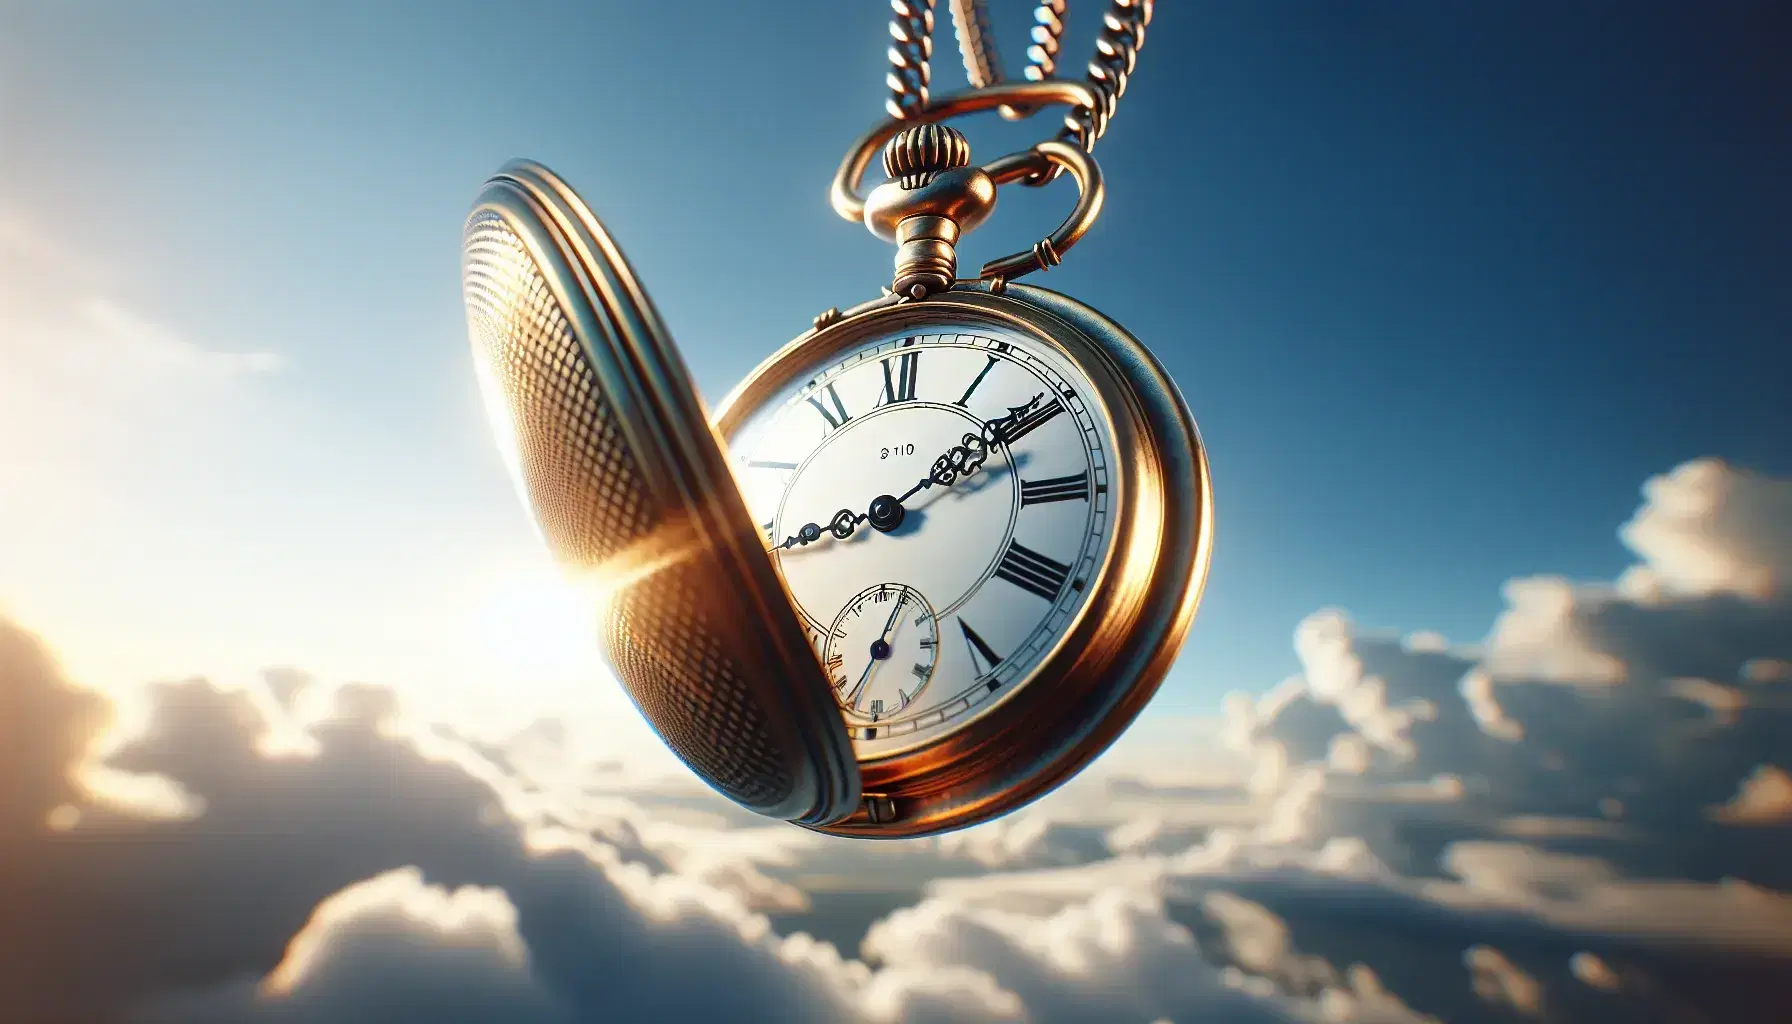 Reloj de bolsillo antiguo con cadena metálica flotando en el cielo azul con nubes, mostrando las 3:10 en su esfera blanca con números romanos.